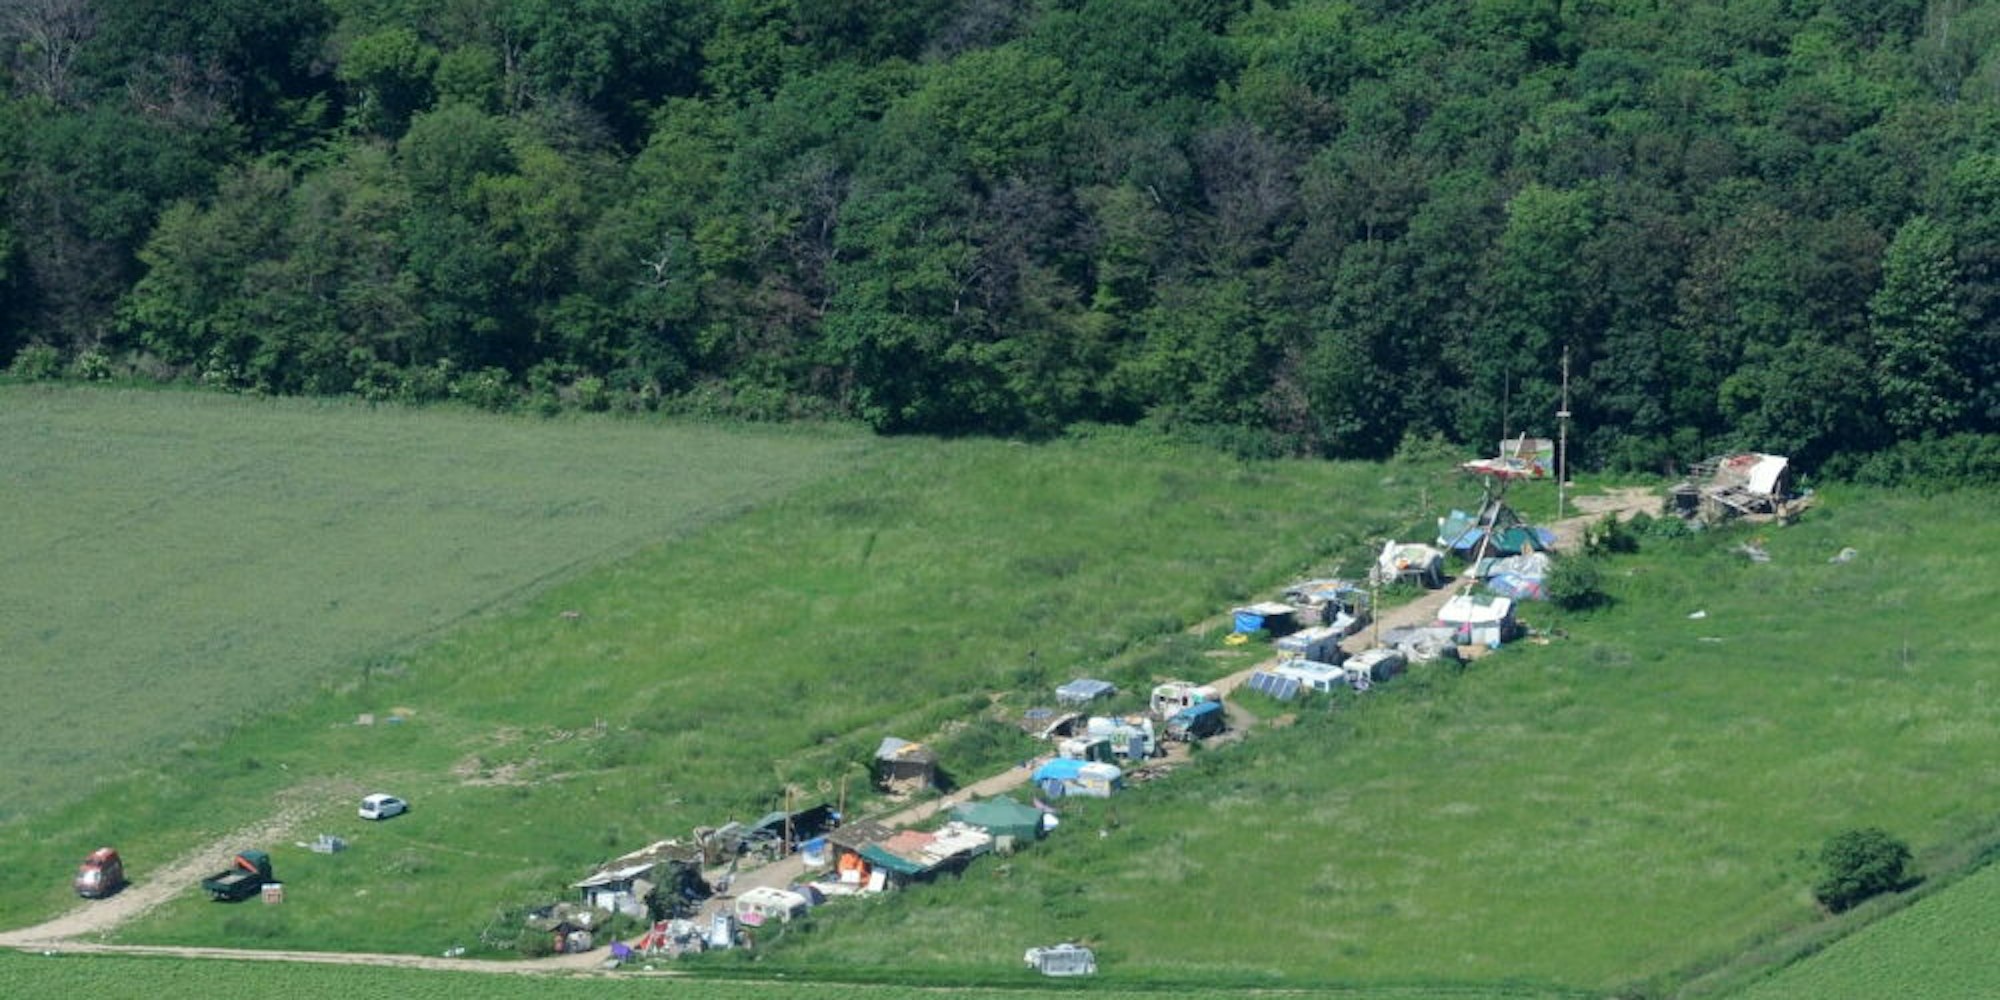 Seit 2012 befindet sich das Protestcamp von Kohlegegnern auf einer privaten Wiese am Rand des Hambacher Forstes.